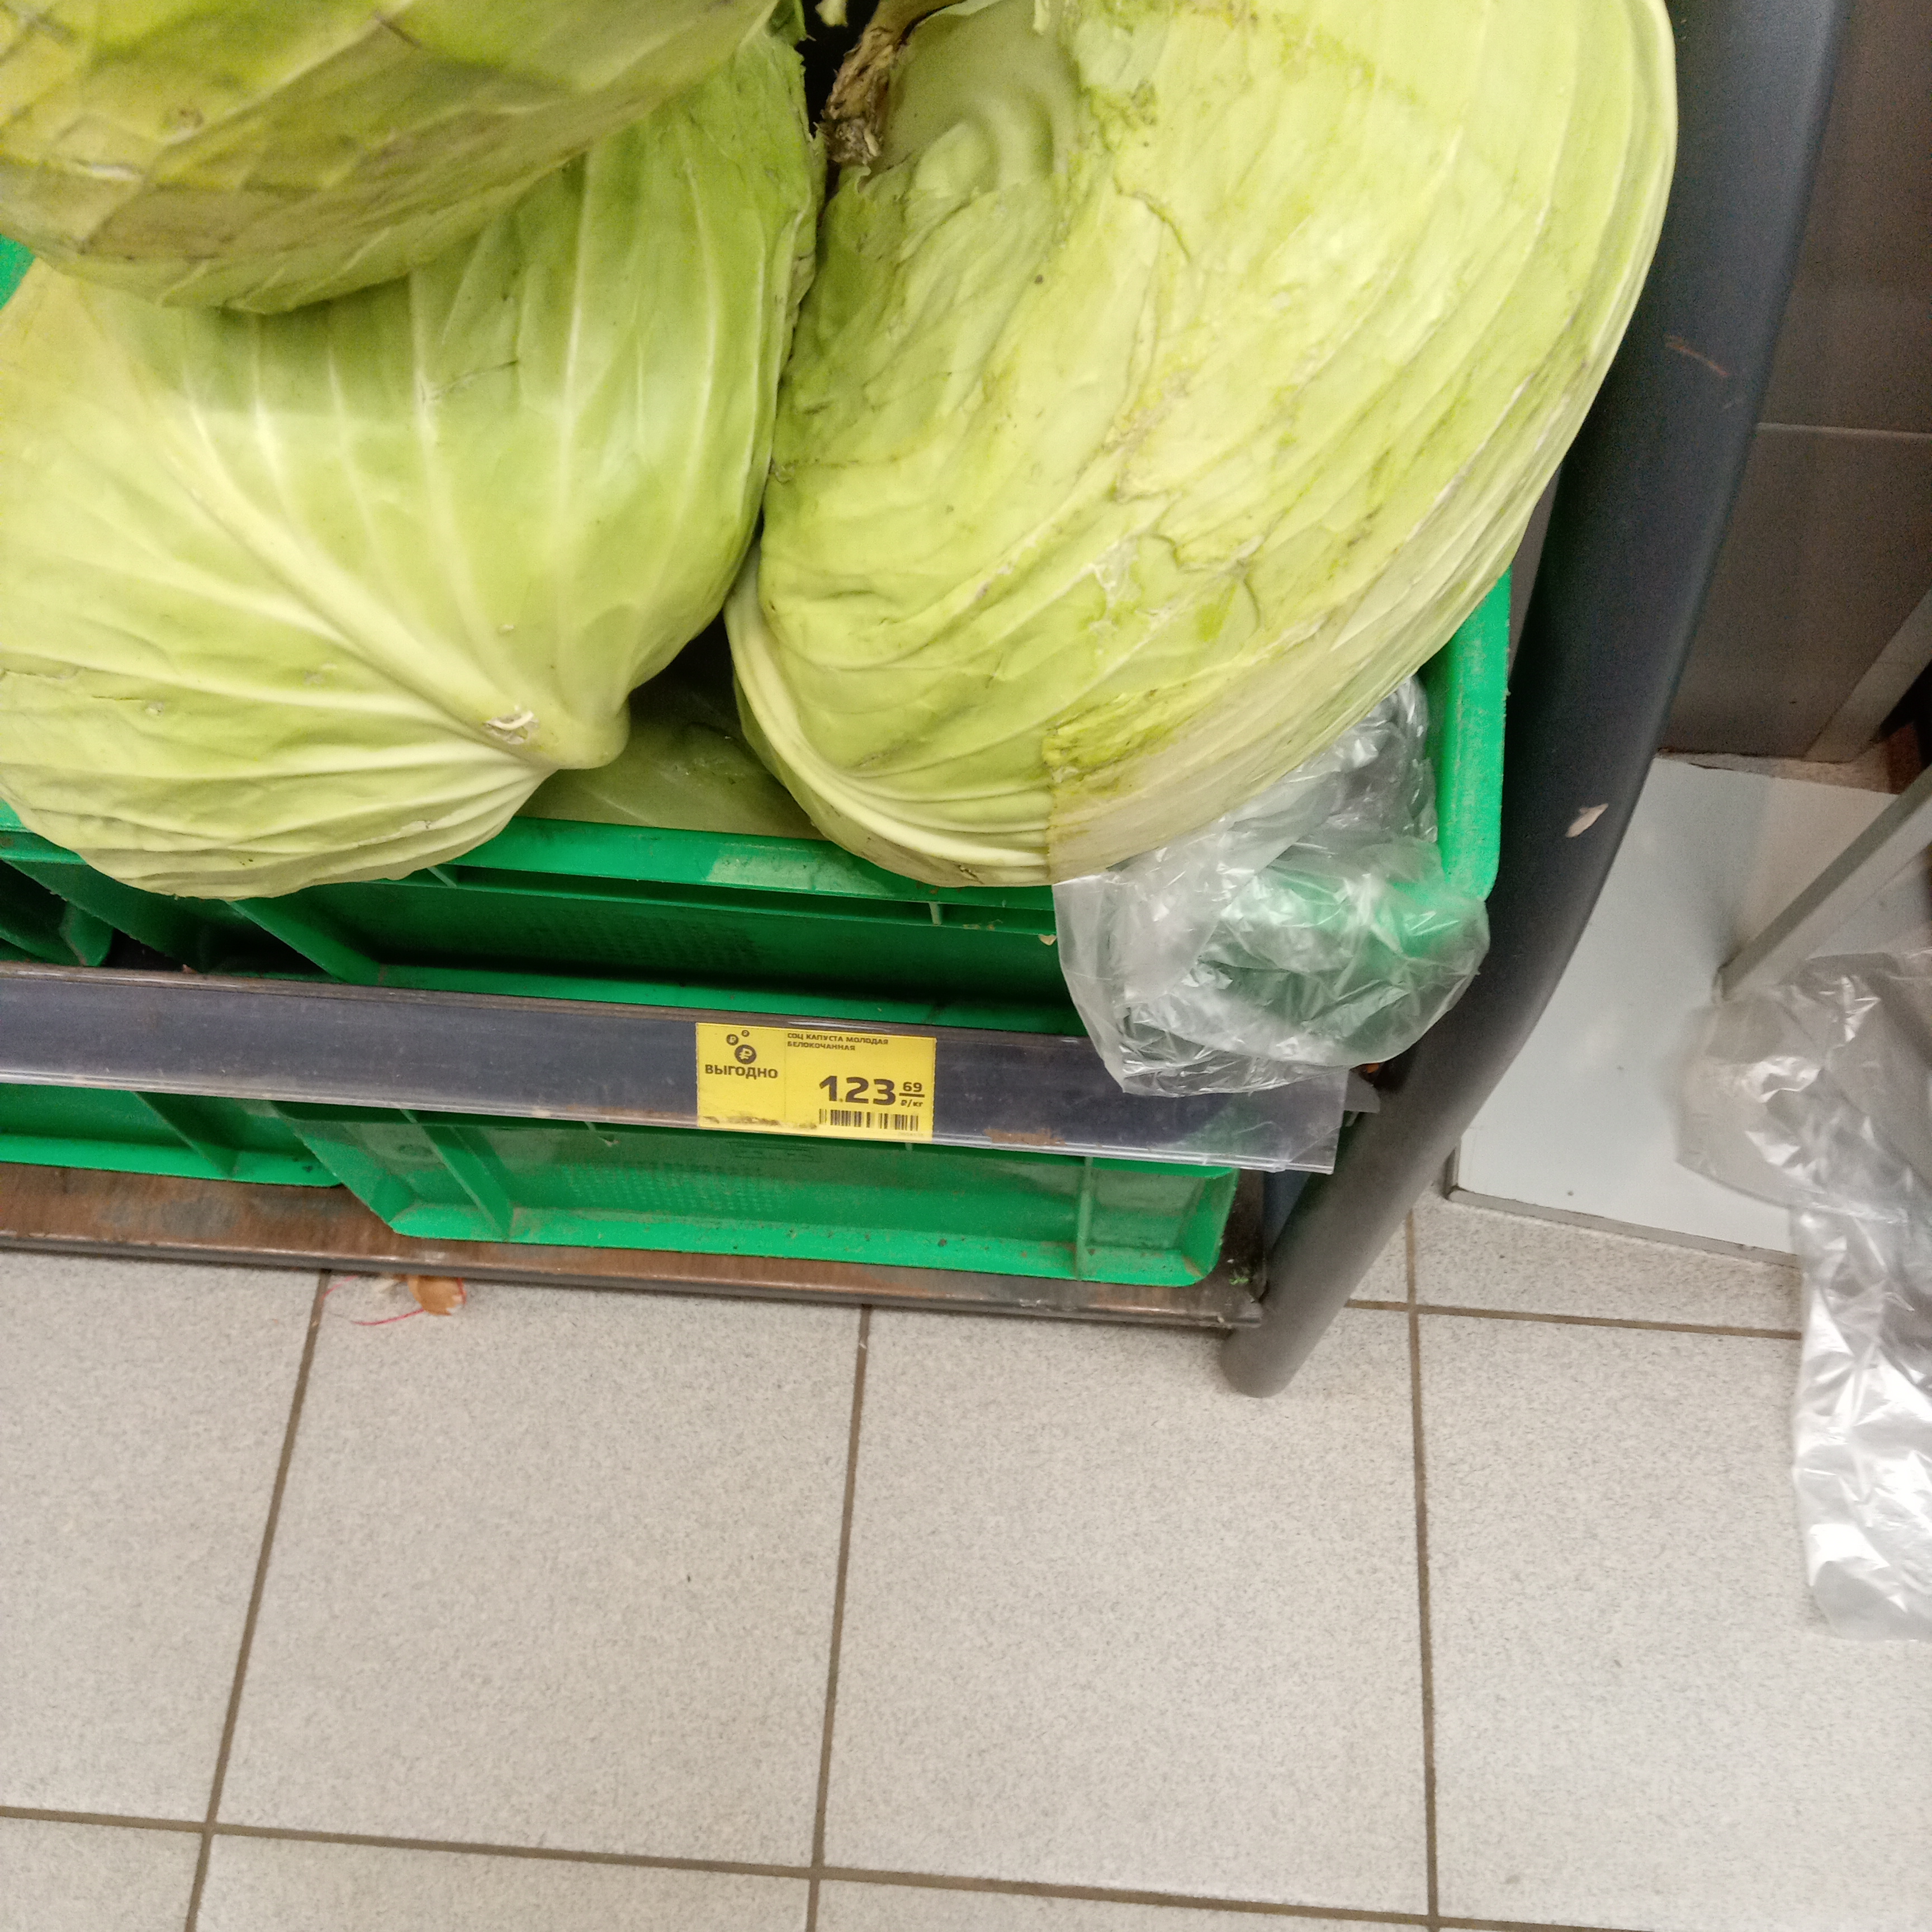 Продавец капусты на базаре. Рублей за килограмм. Женщина с ведром капусты на рынке. 1000 рублей за кг